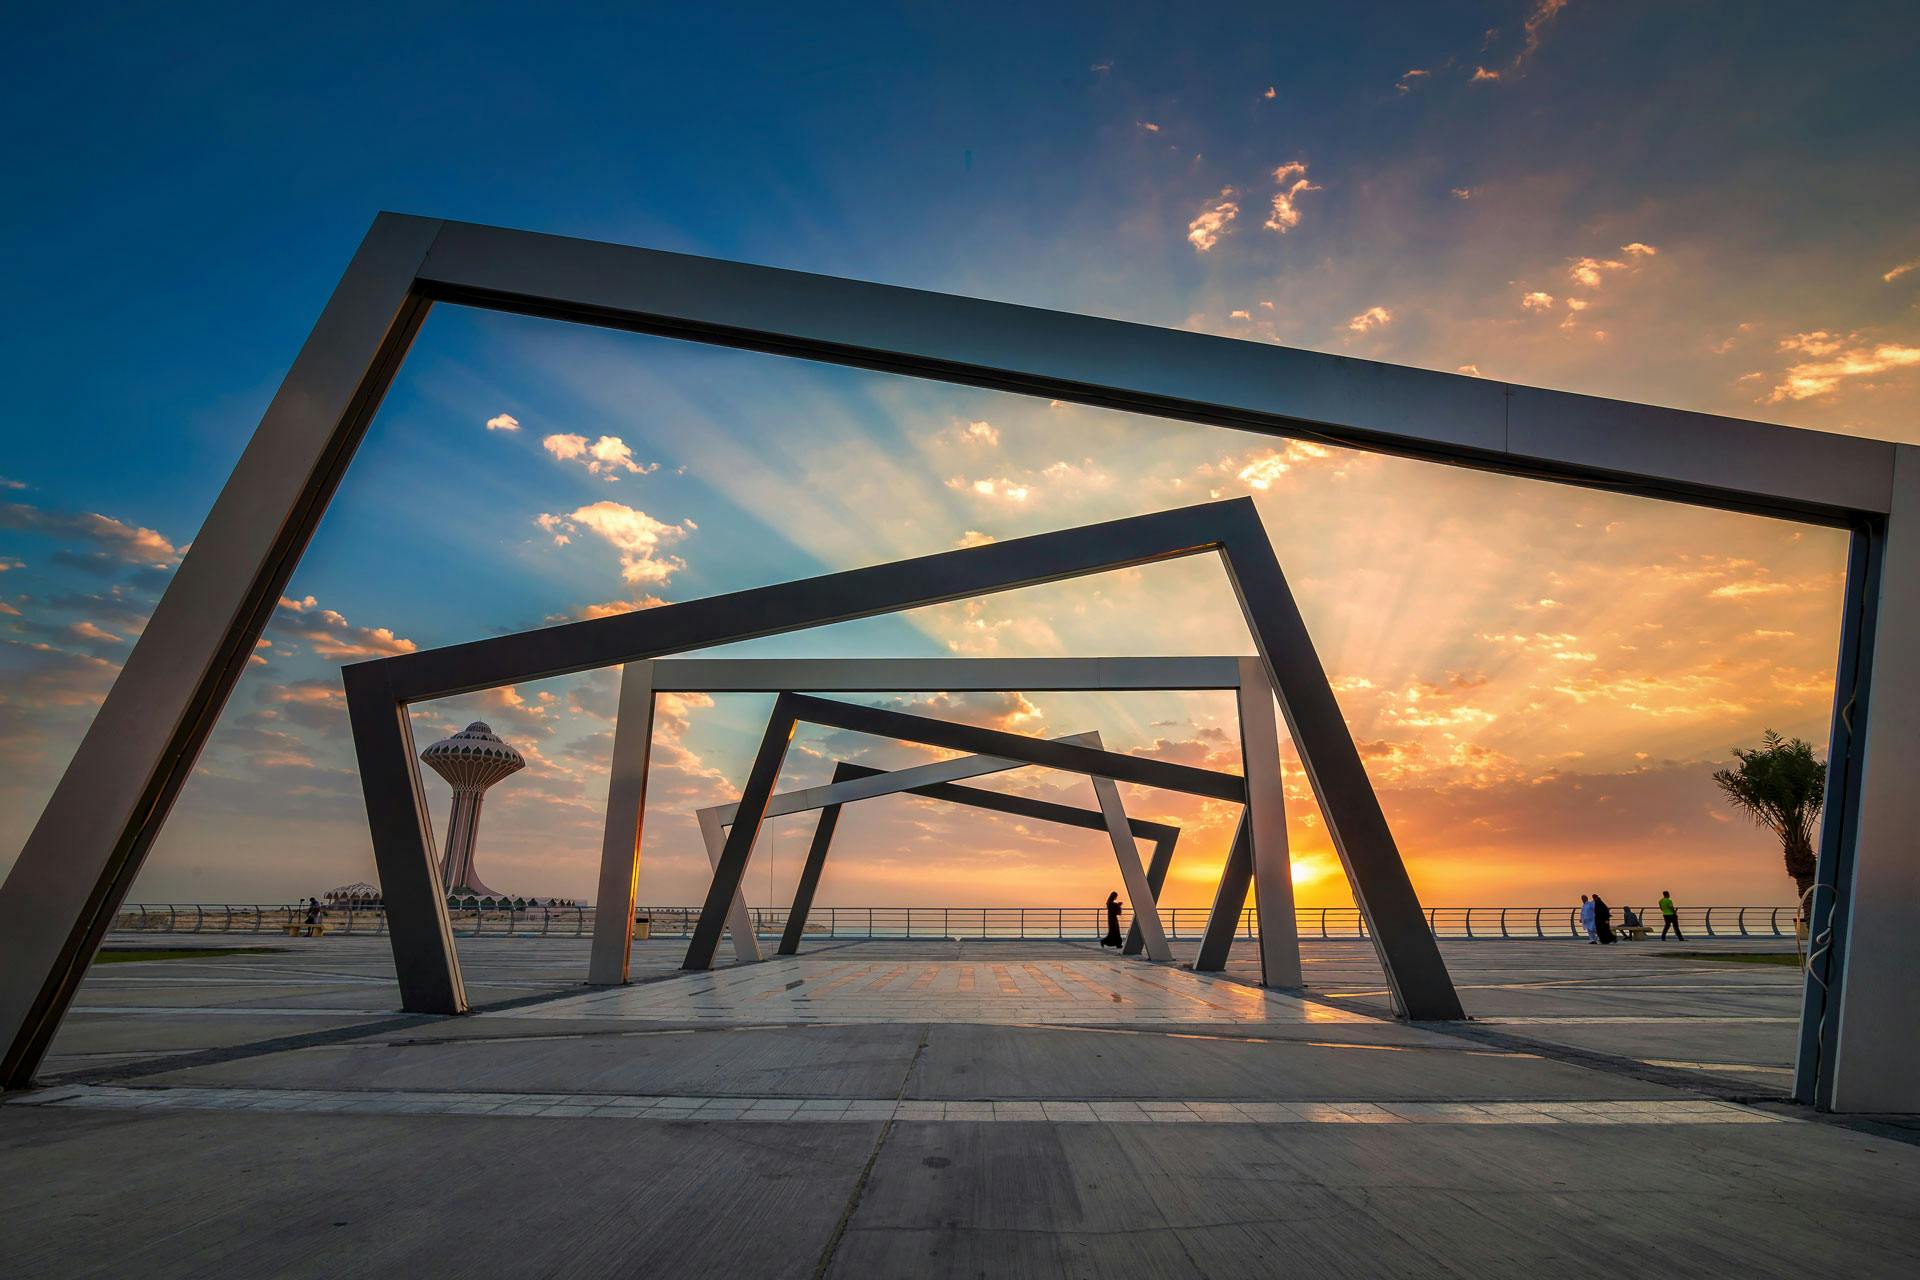 Sunrise view of art structure at Dammam Al Khobar Corniche, Saudi Arabia